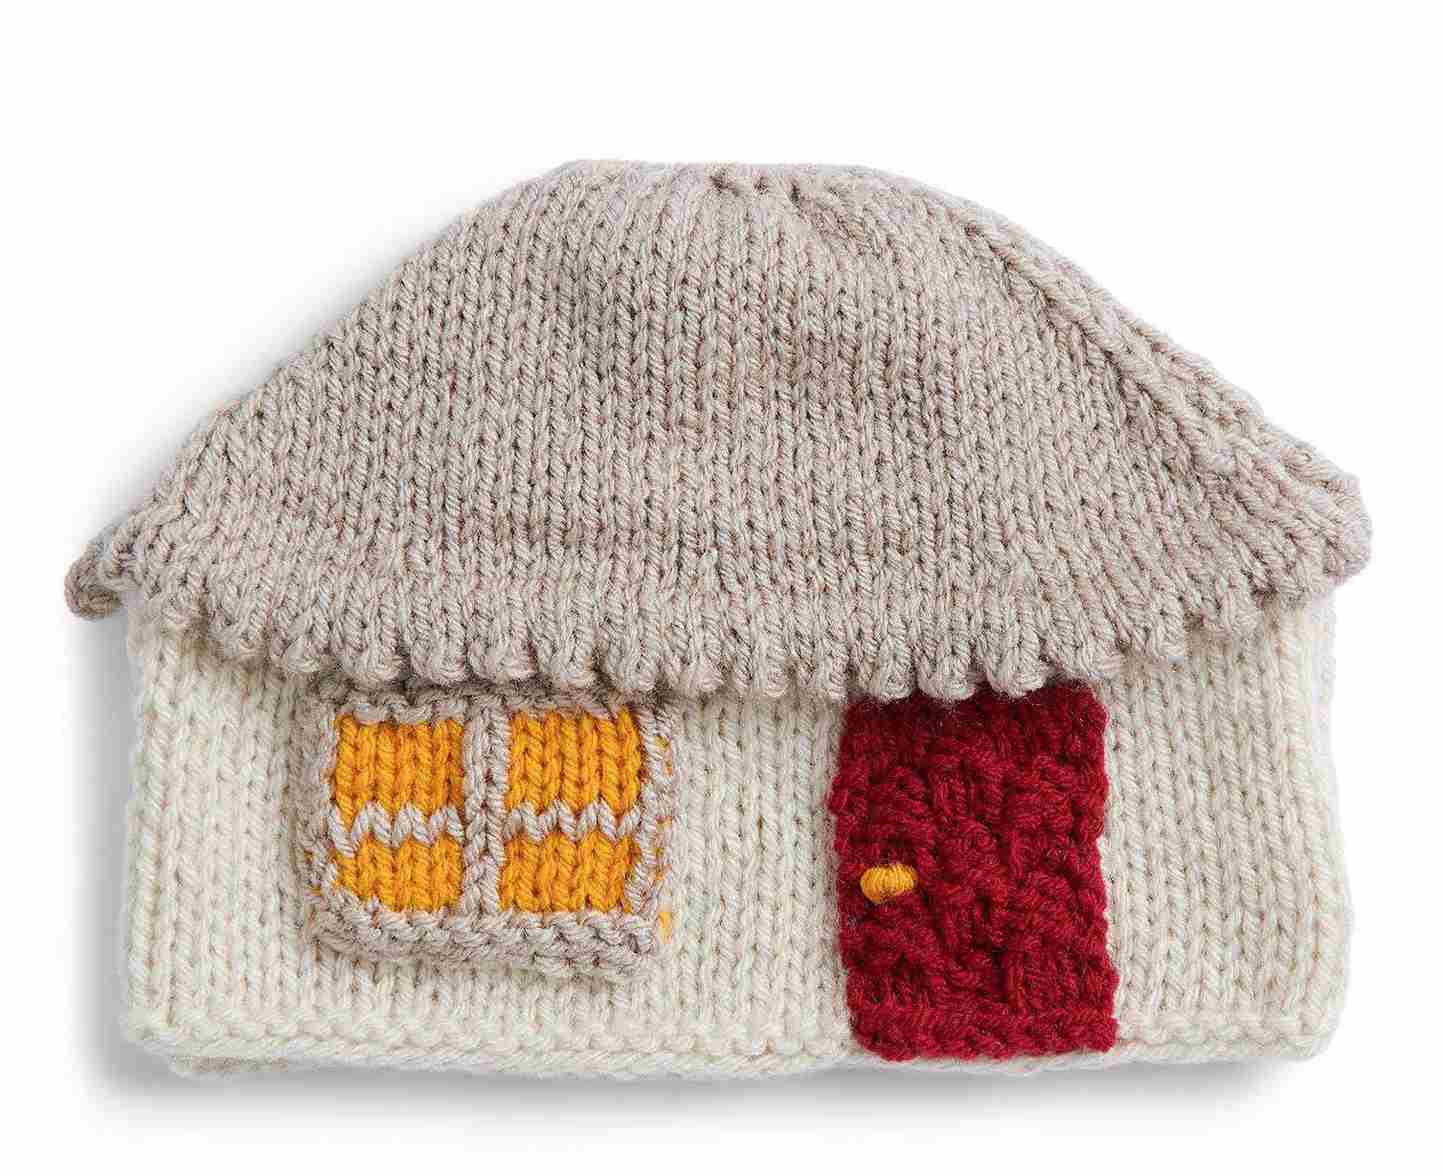 Cozy Cabin Knit Tea Cozy-Free Knitting Pattern